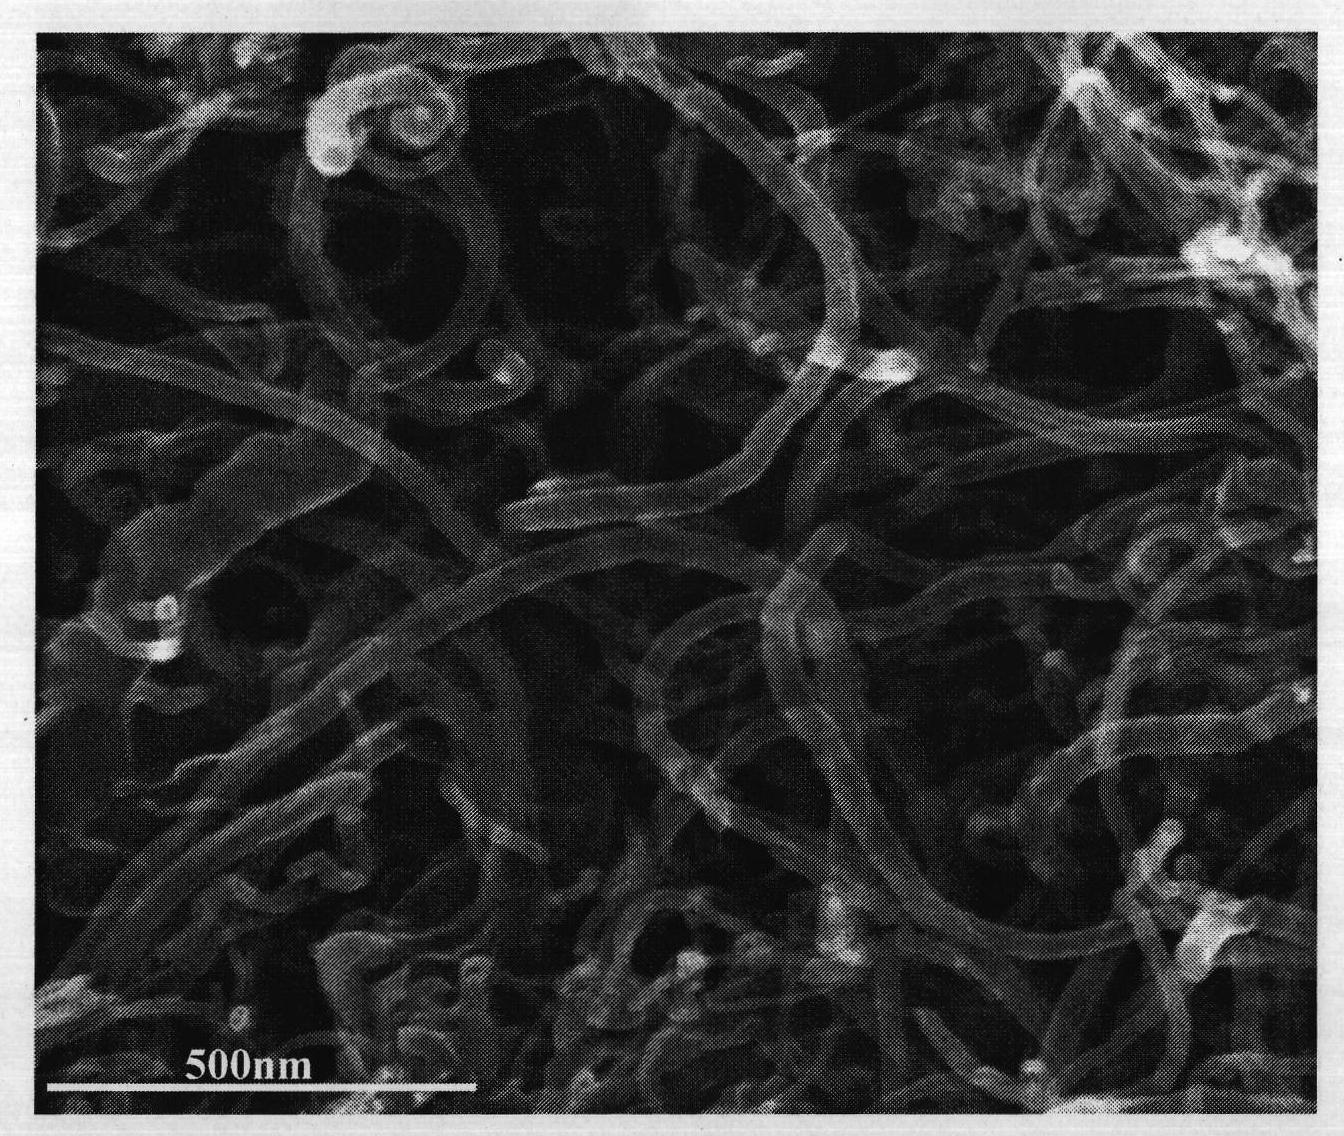 Method for preparing nitrogen-phosphorus codoped multi-walled carbon nanotube